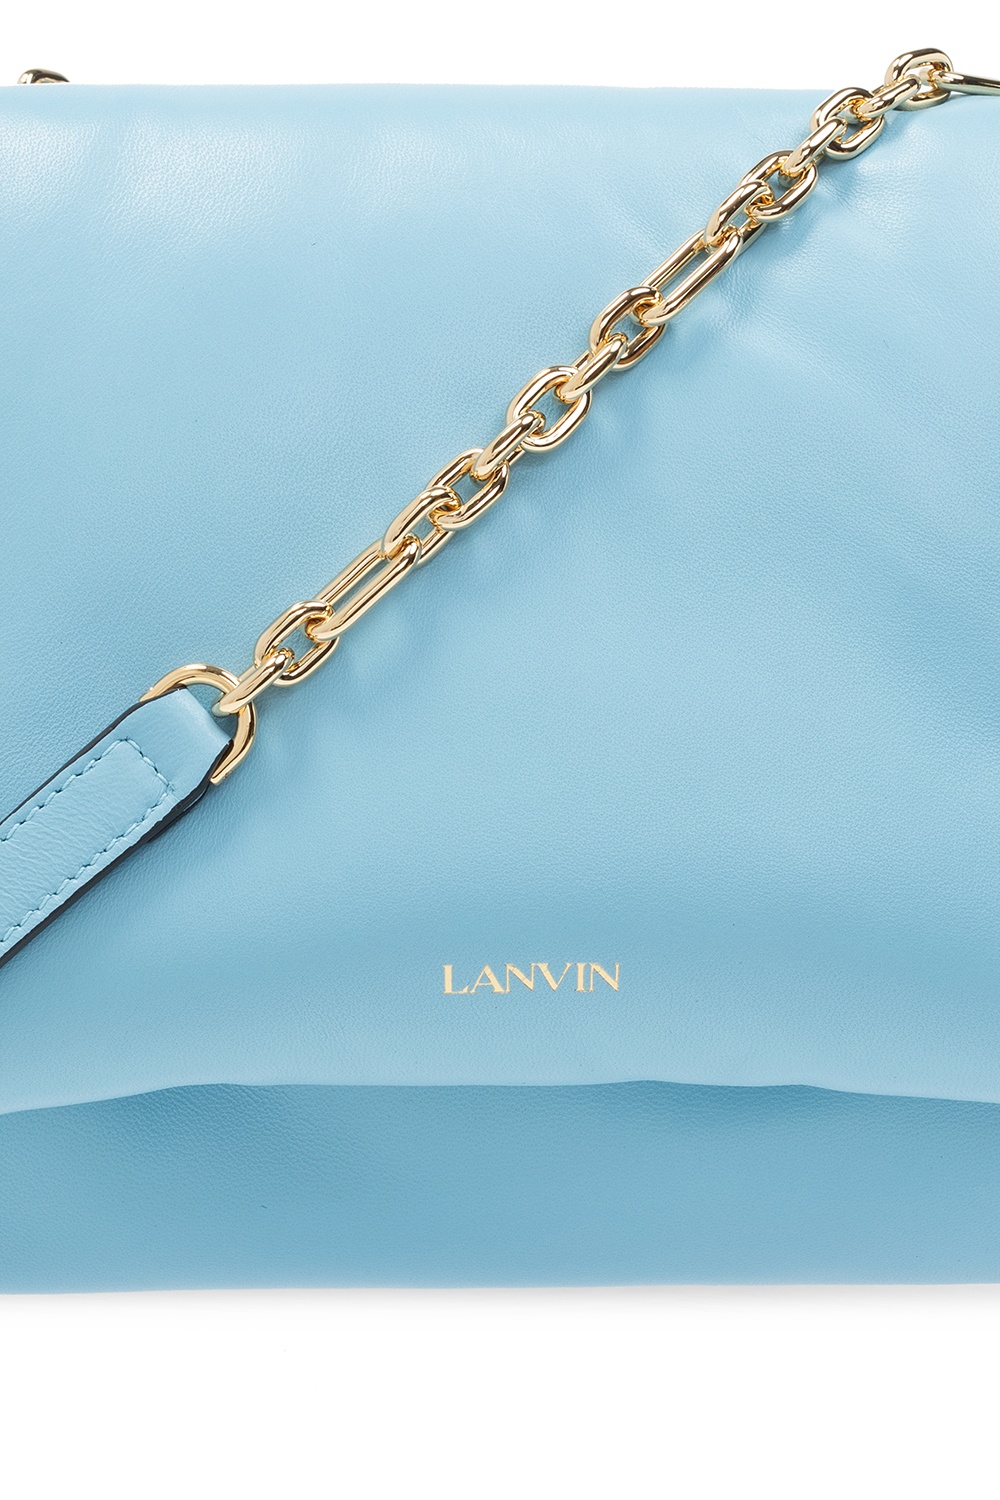 Lanvin ‘Sugar’ shoulder bag